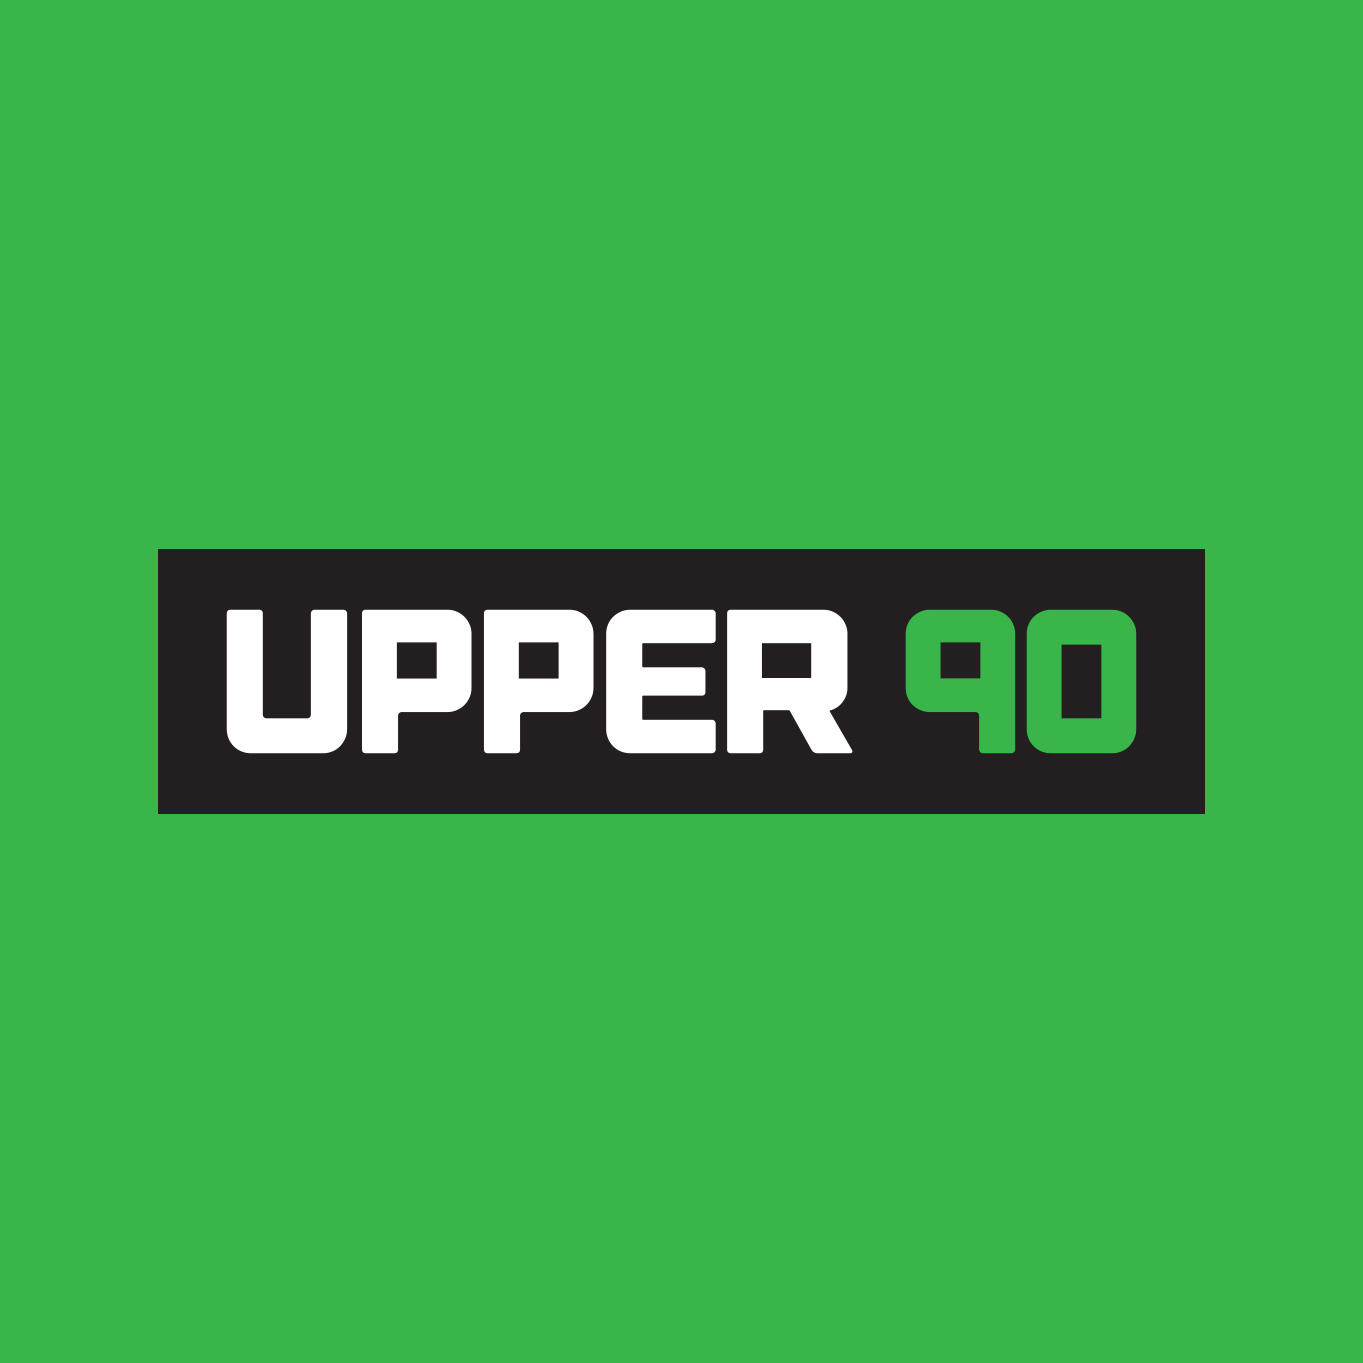 upper 90